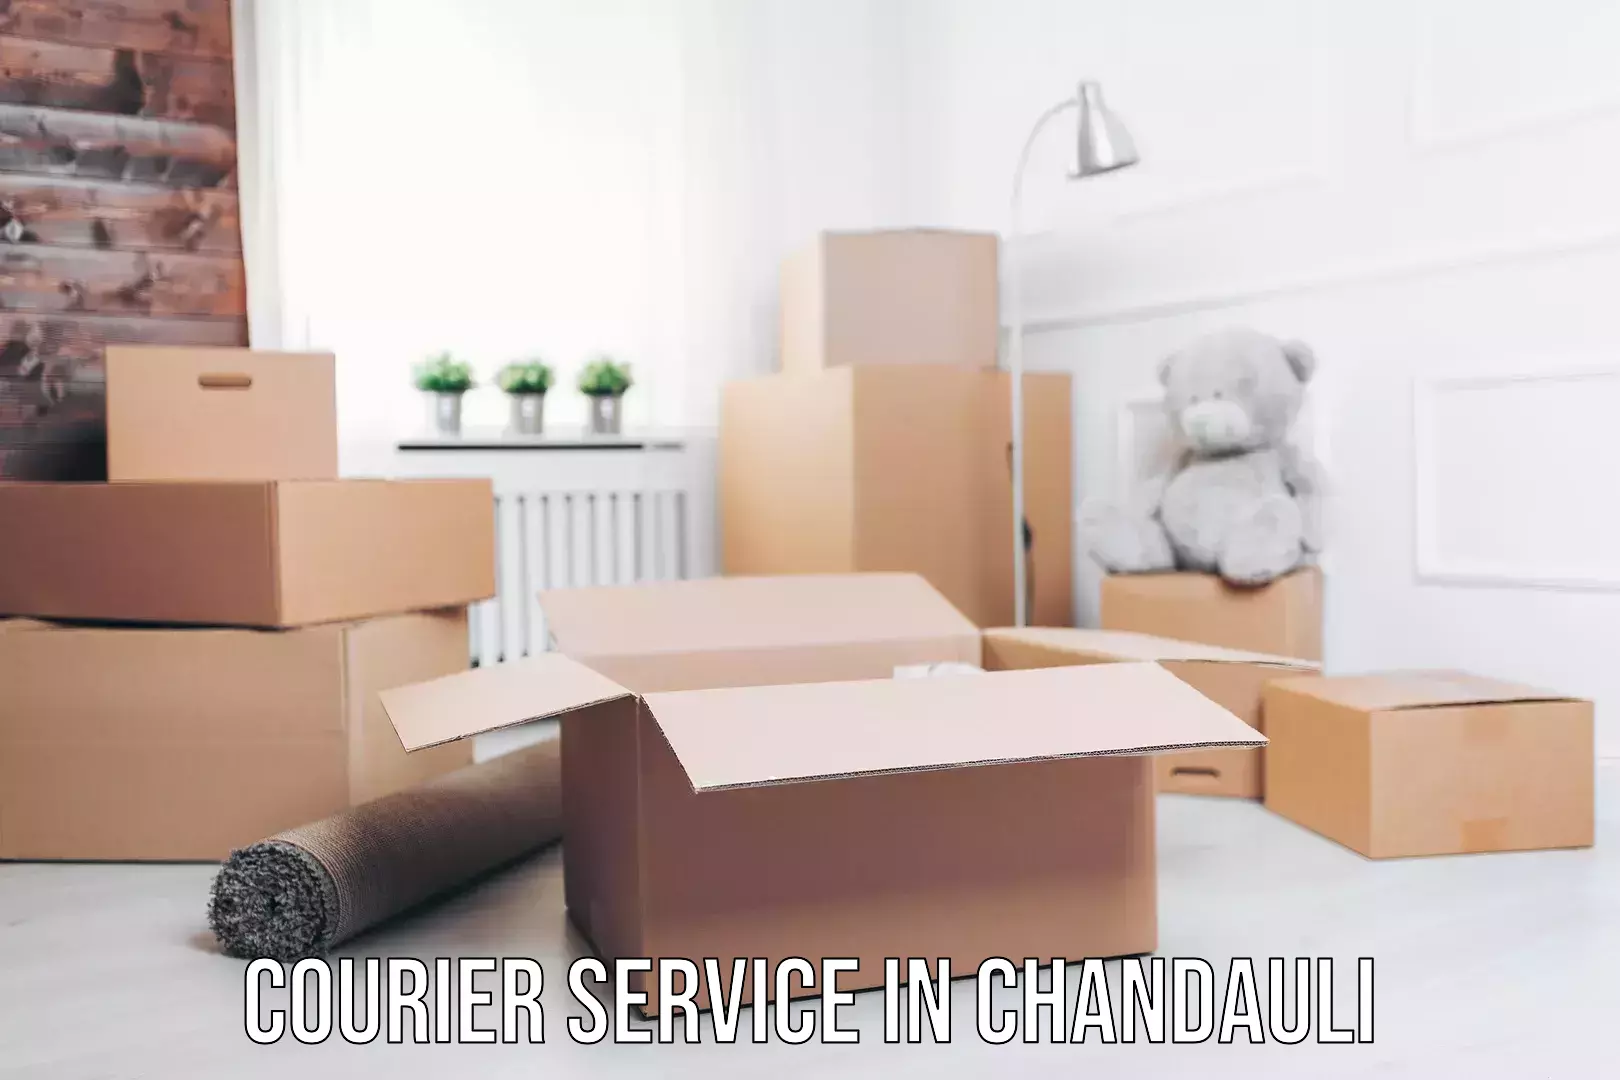 Urgent courier needs in Chandauli